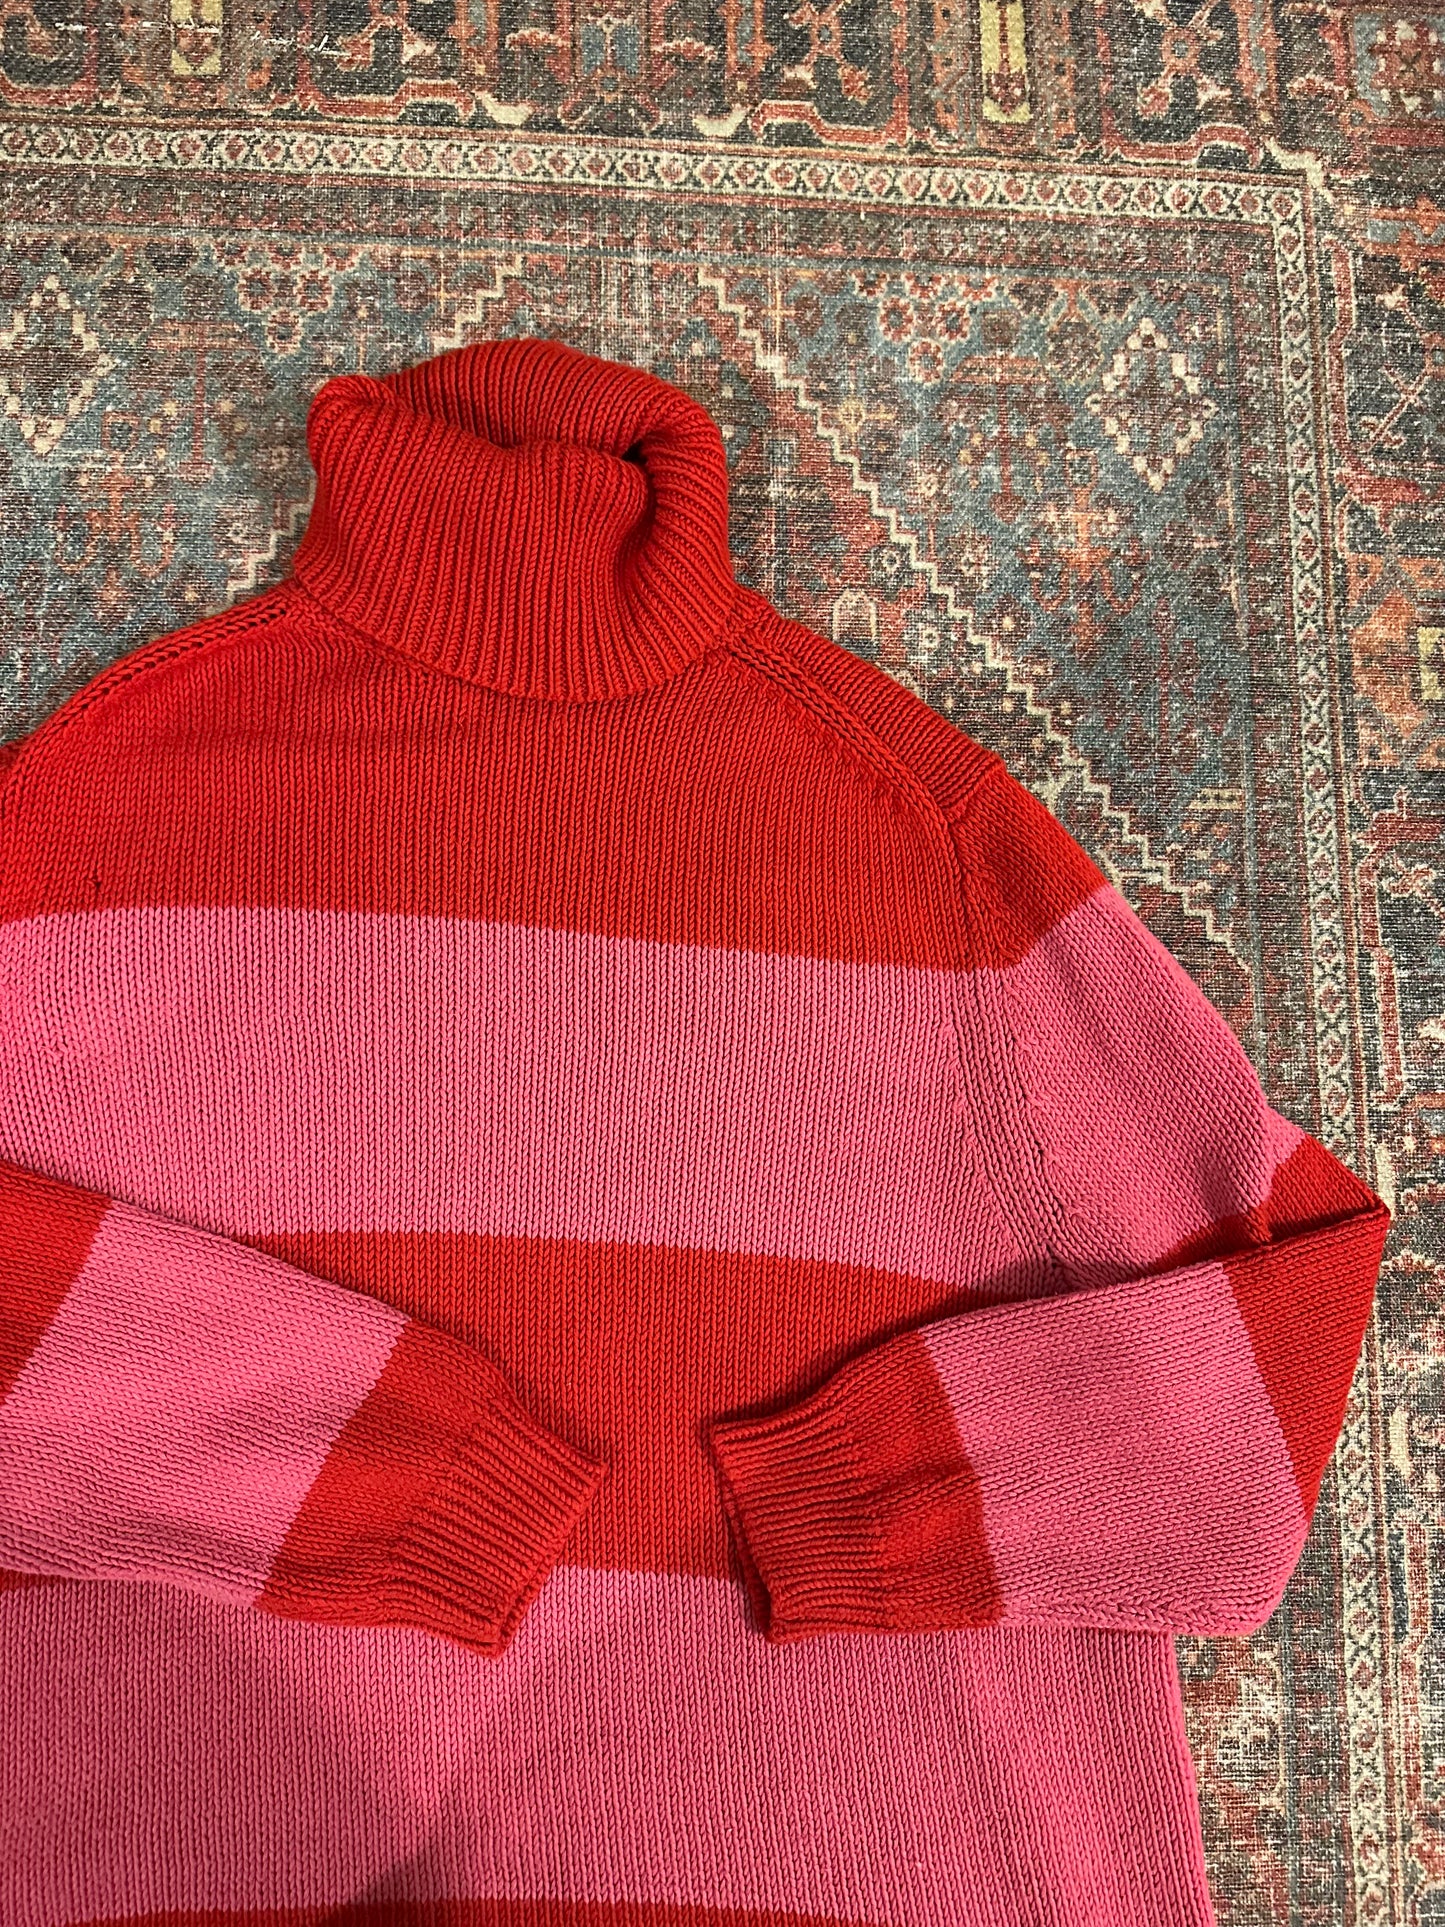 ISAAC MIZRAHI x Target Knit Sweater